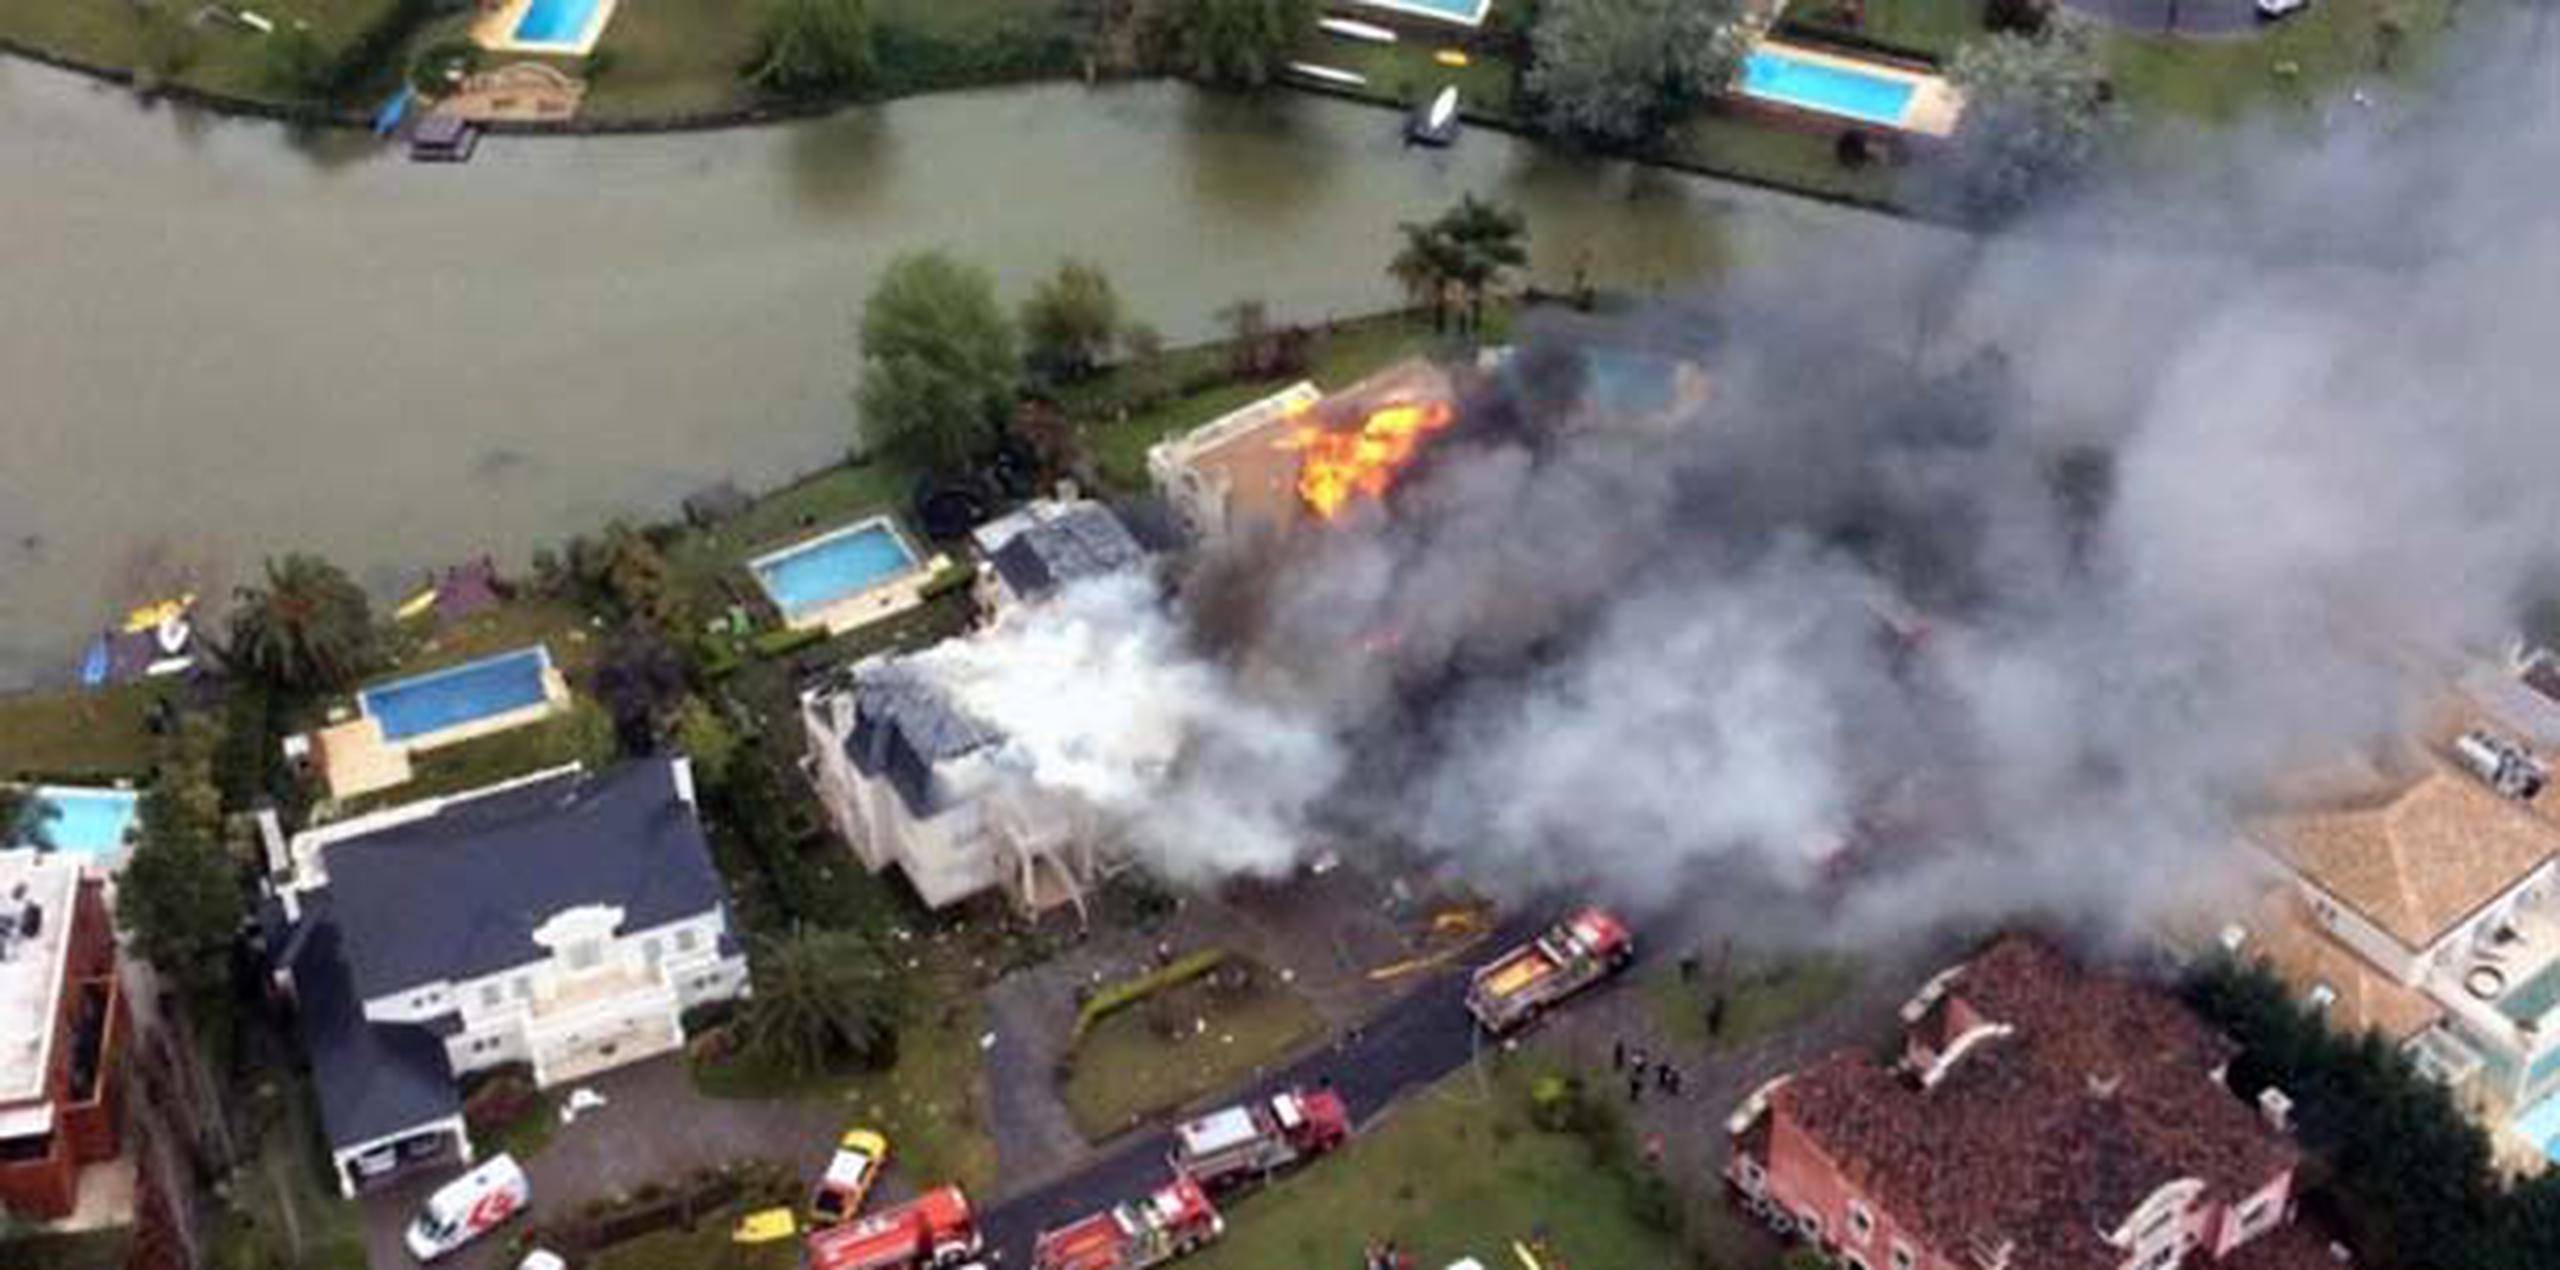 La aeronave chocó contra un árbol, golpeó la casa -cuya destrucción fue total-, rebotó sobre otras y explotó, lo que generó incendios en tres propiedades deshabitadas, informaron los bomberos. (AFP)